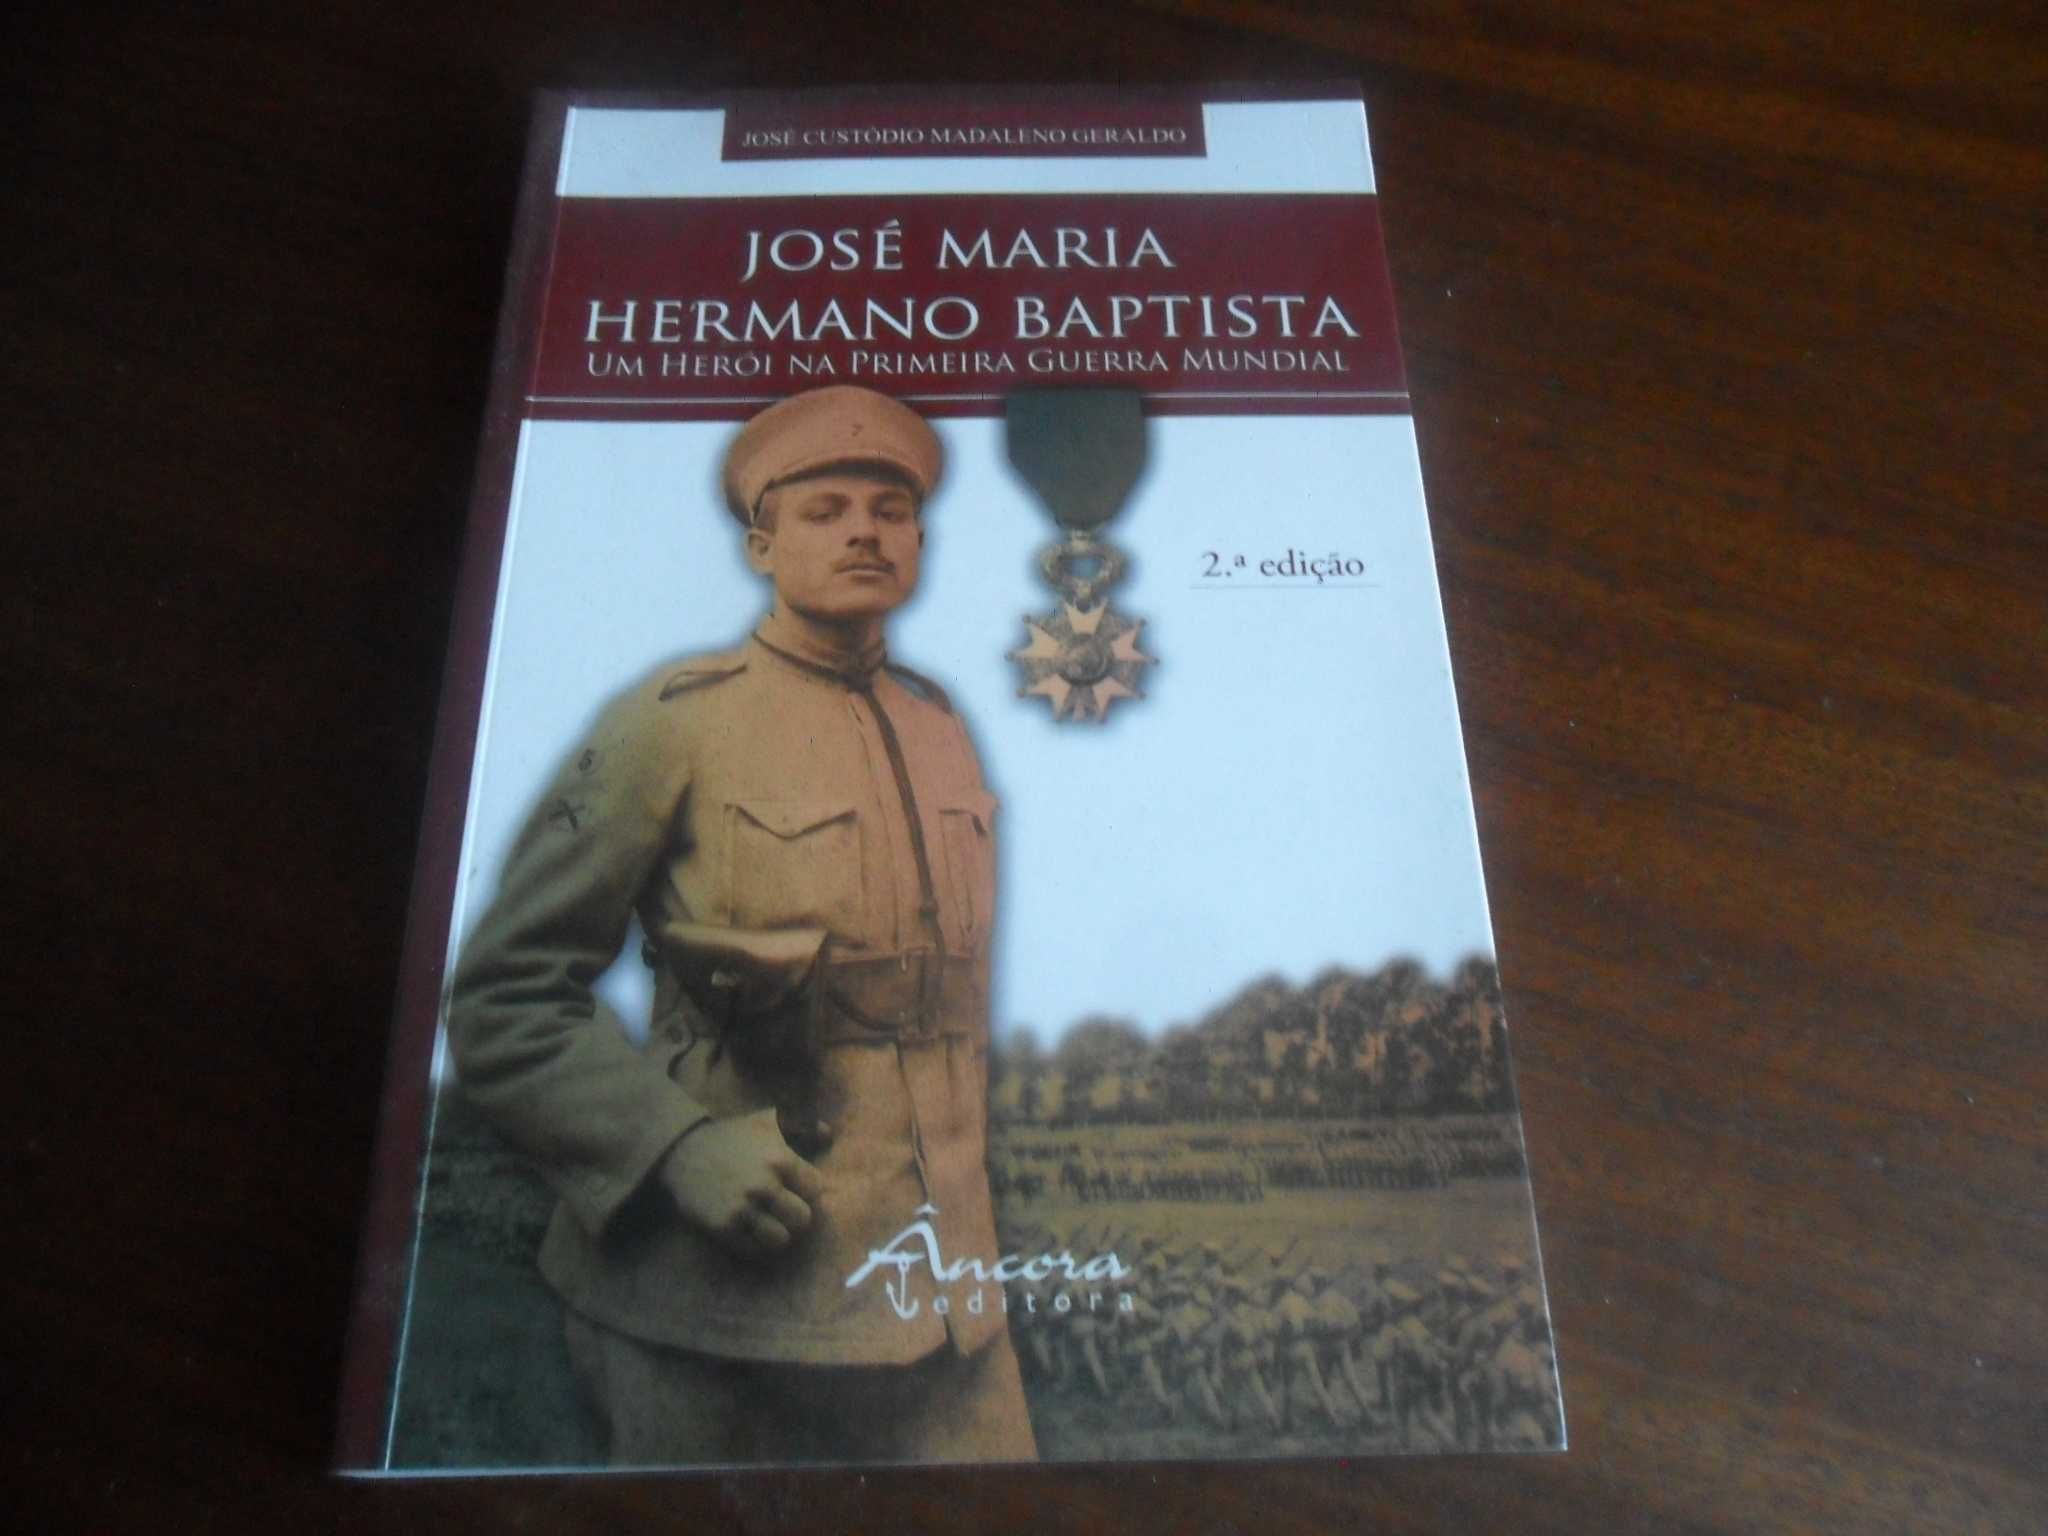 "José Maria Hermano Baptista" de José Custódio Madaleno Geraldo